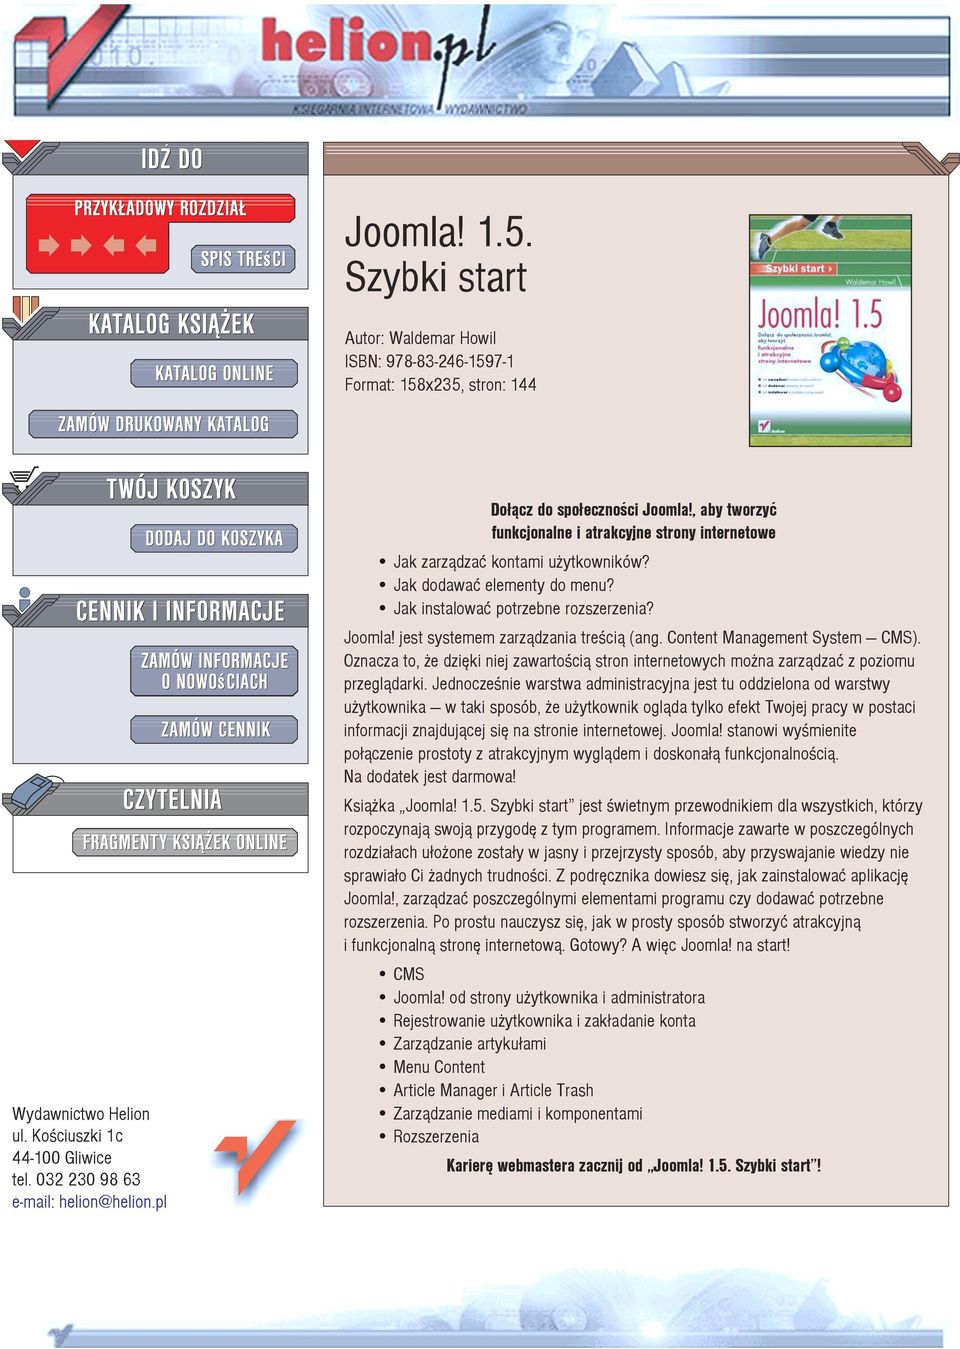 Joomla! jest systemem zarz¹dzania treœci¹ (ang. Content Management System CMS). Oznacza to, e dziêki niej zawartoœci¹ stron internetowych mo na zarz¹dzaæ z poziomu przegl¹darki.